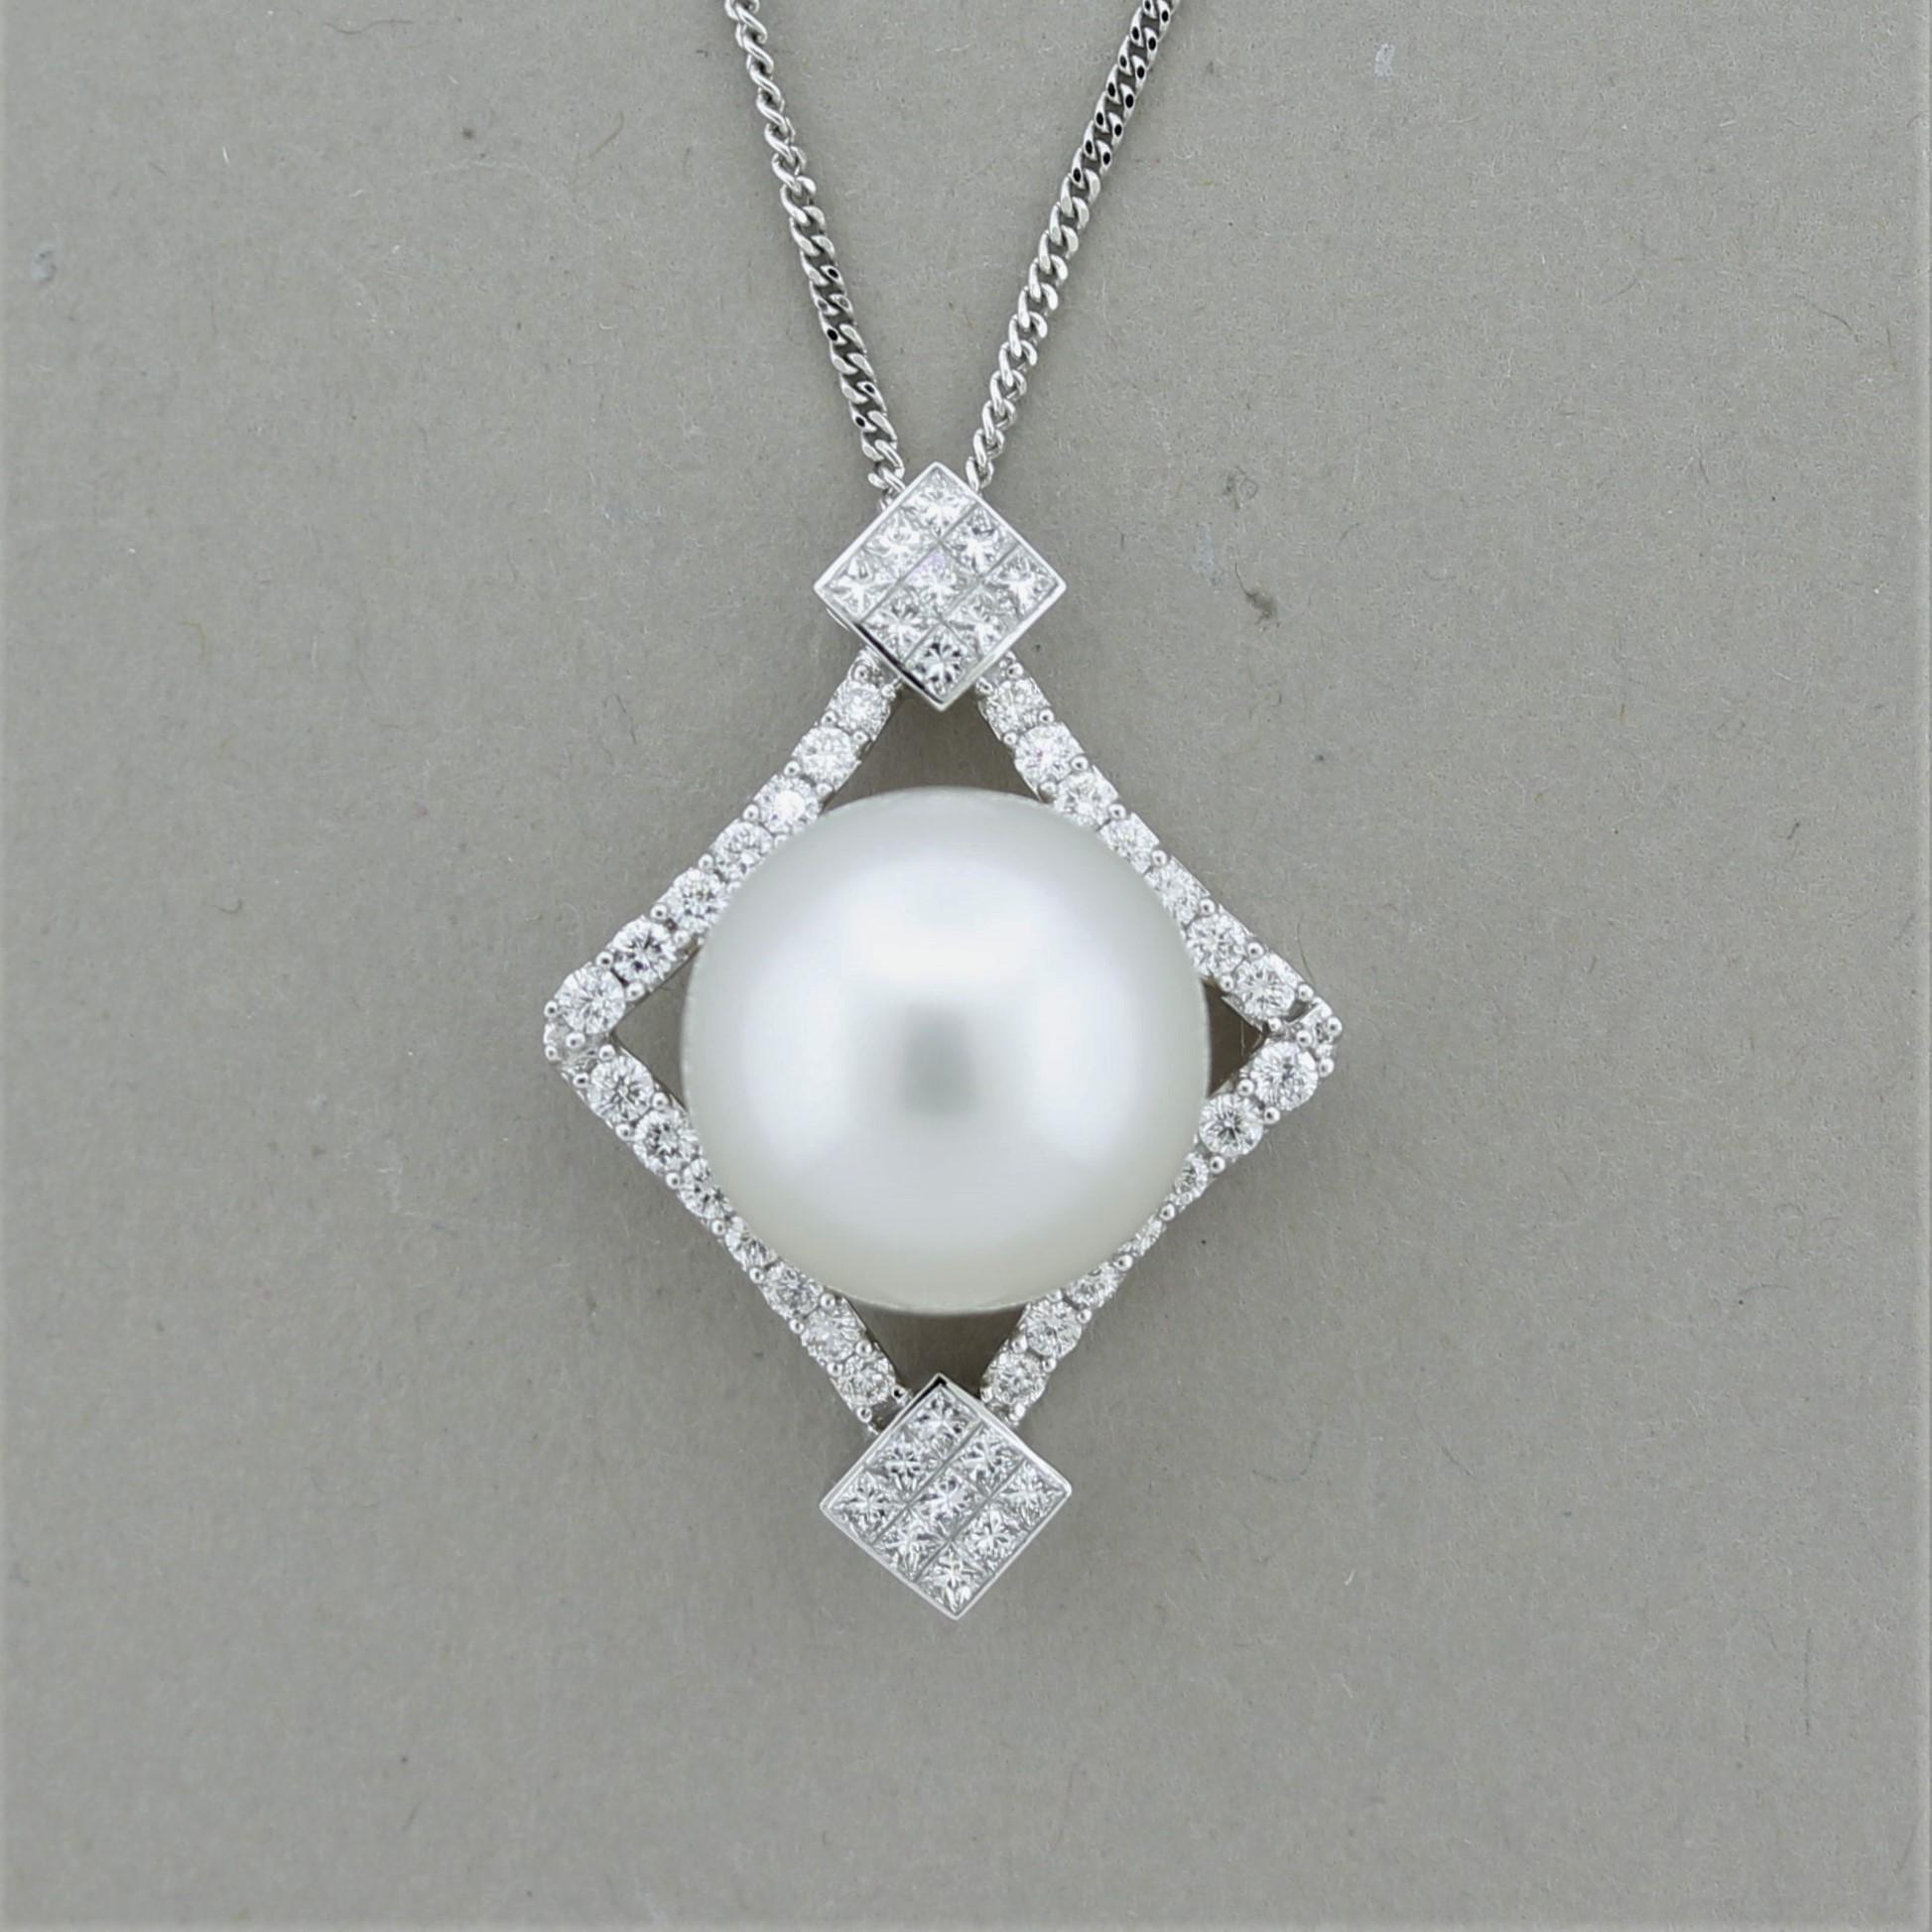 Un joli pendentif avec une perle des mers du Sud de qualité supérieure mesurant 13,5 mm. Il est d'un blanc éclatant, d'un lustre excellent et exempt de tout défaut majeur. Elle est rehaussée de 0,74 carats de diamants ronds de taille brillant sertis